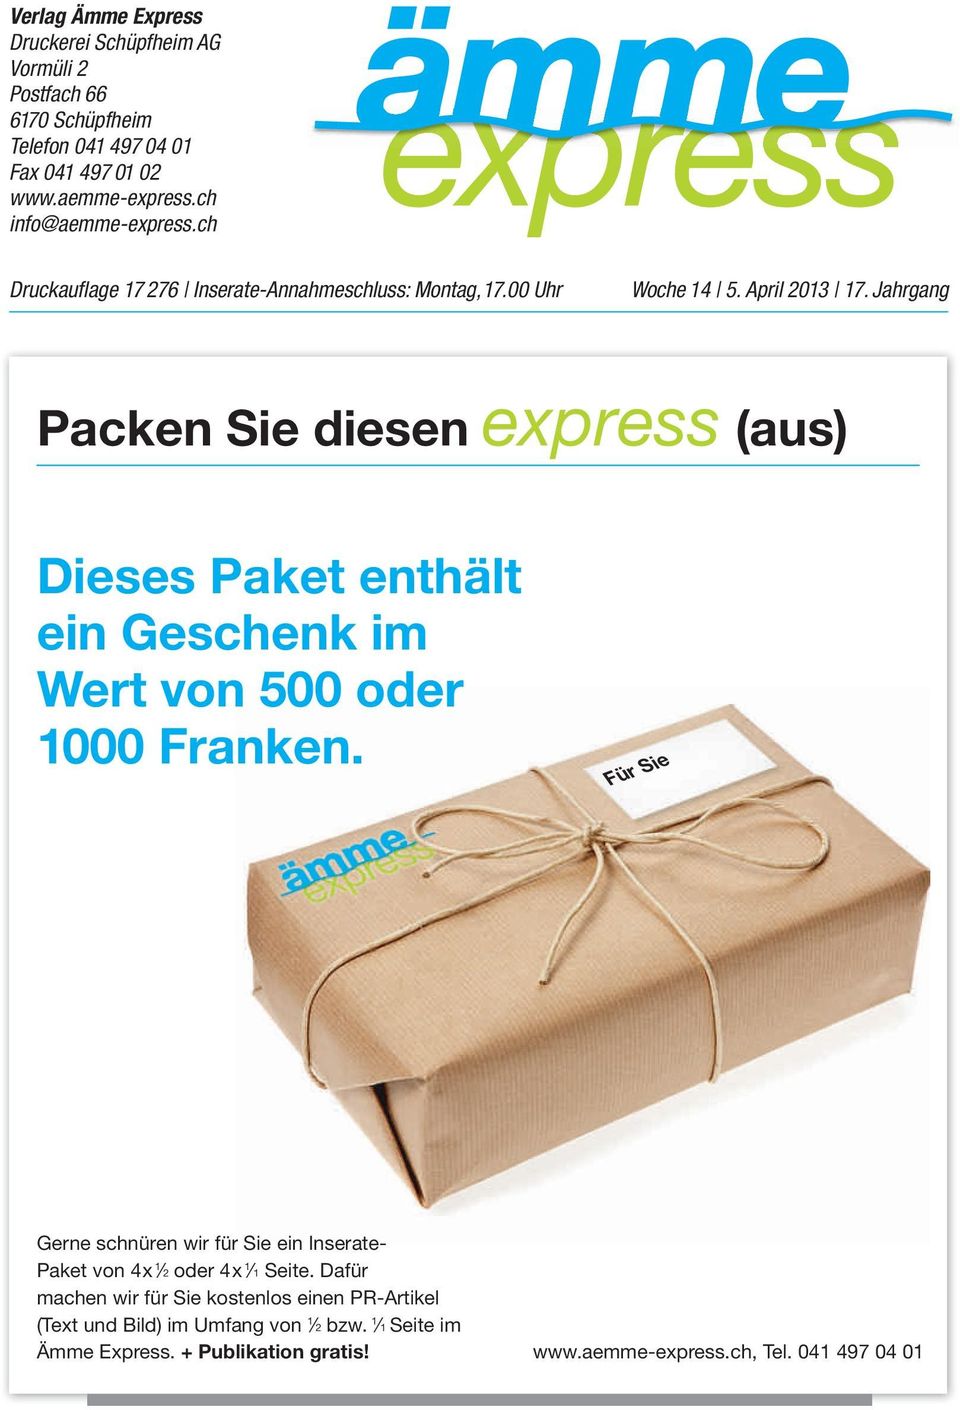 Jahrgang Packen Sie diesen express (aus) Dieses Paket enthält ein Geschenk im Wert von 500 oder 1000 Franken.